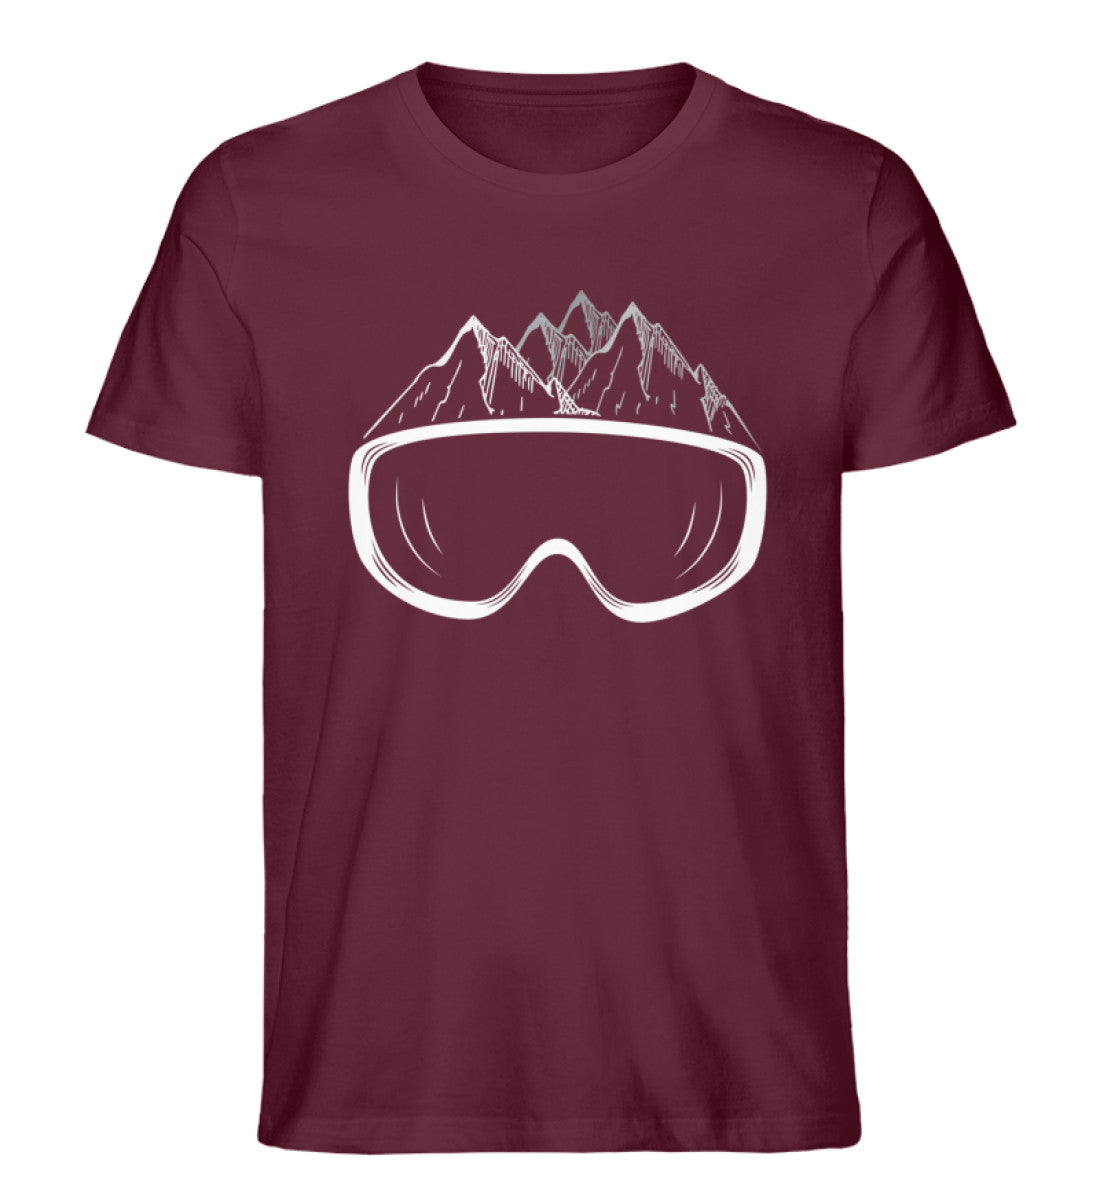 Wintersporteln - Herren Premium Organic T-Shirt Weinrot